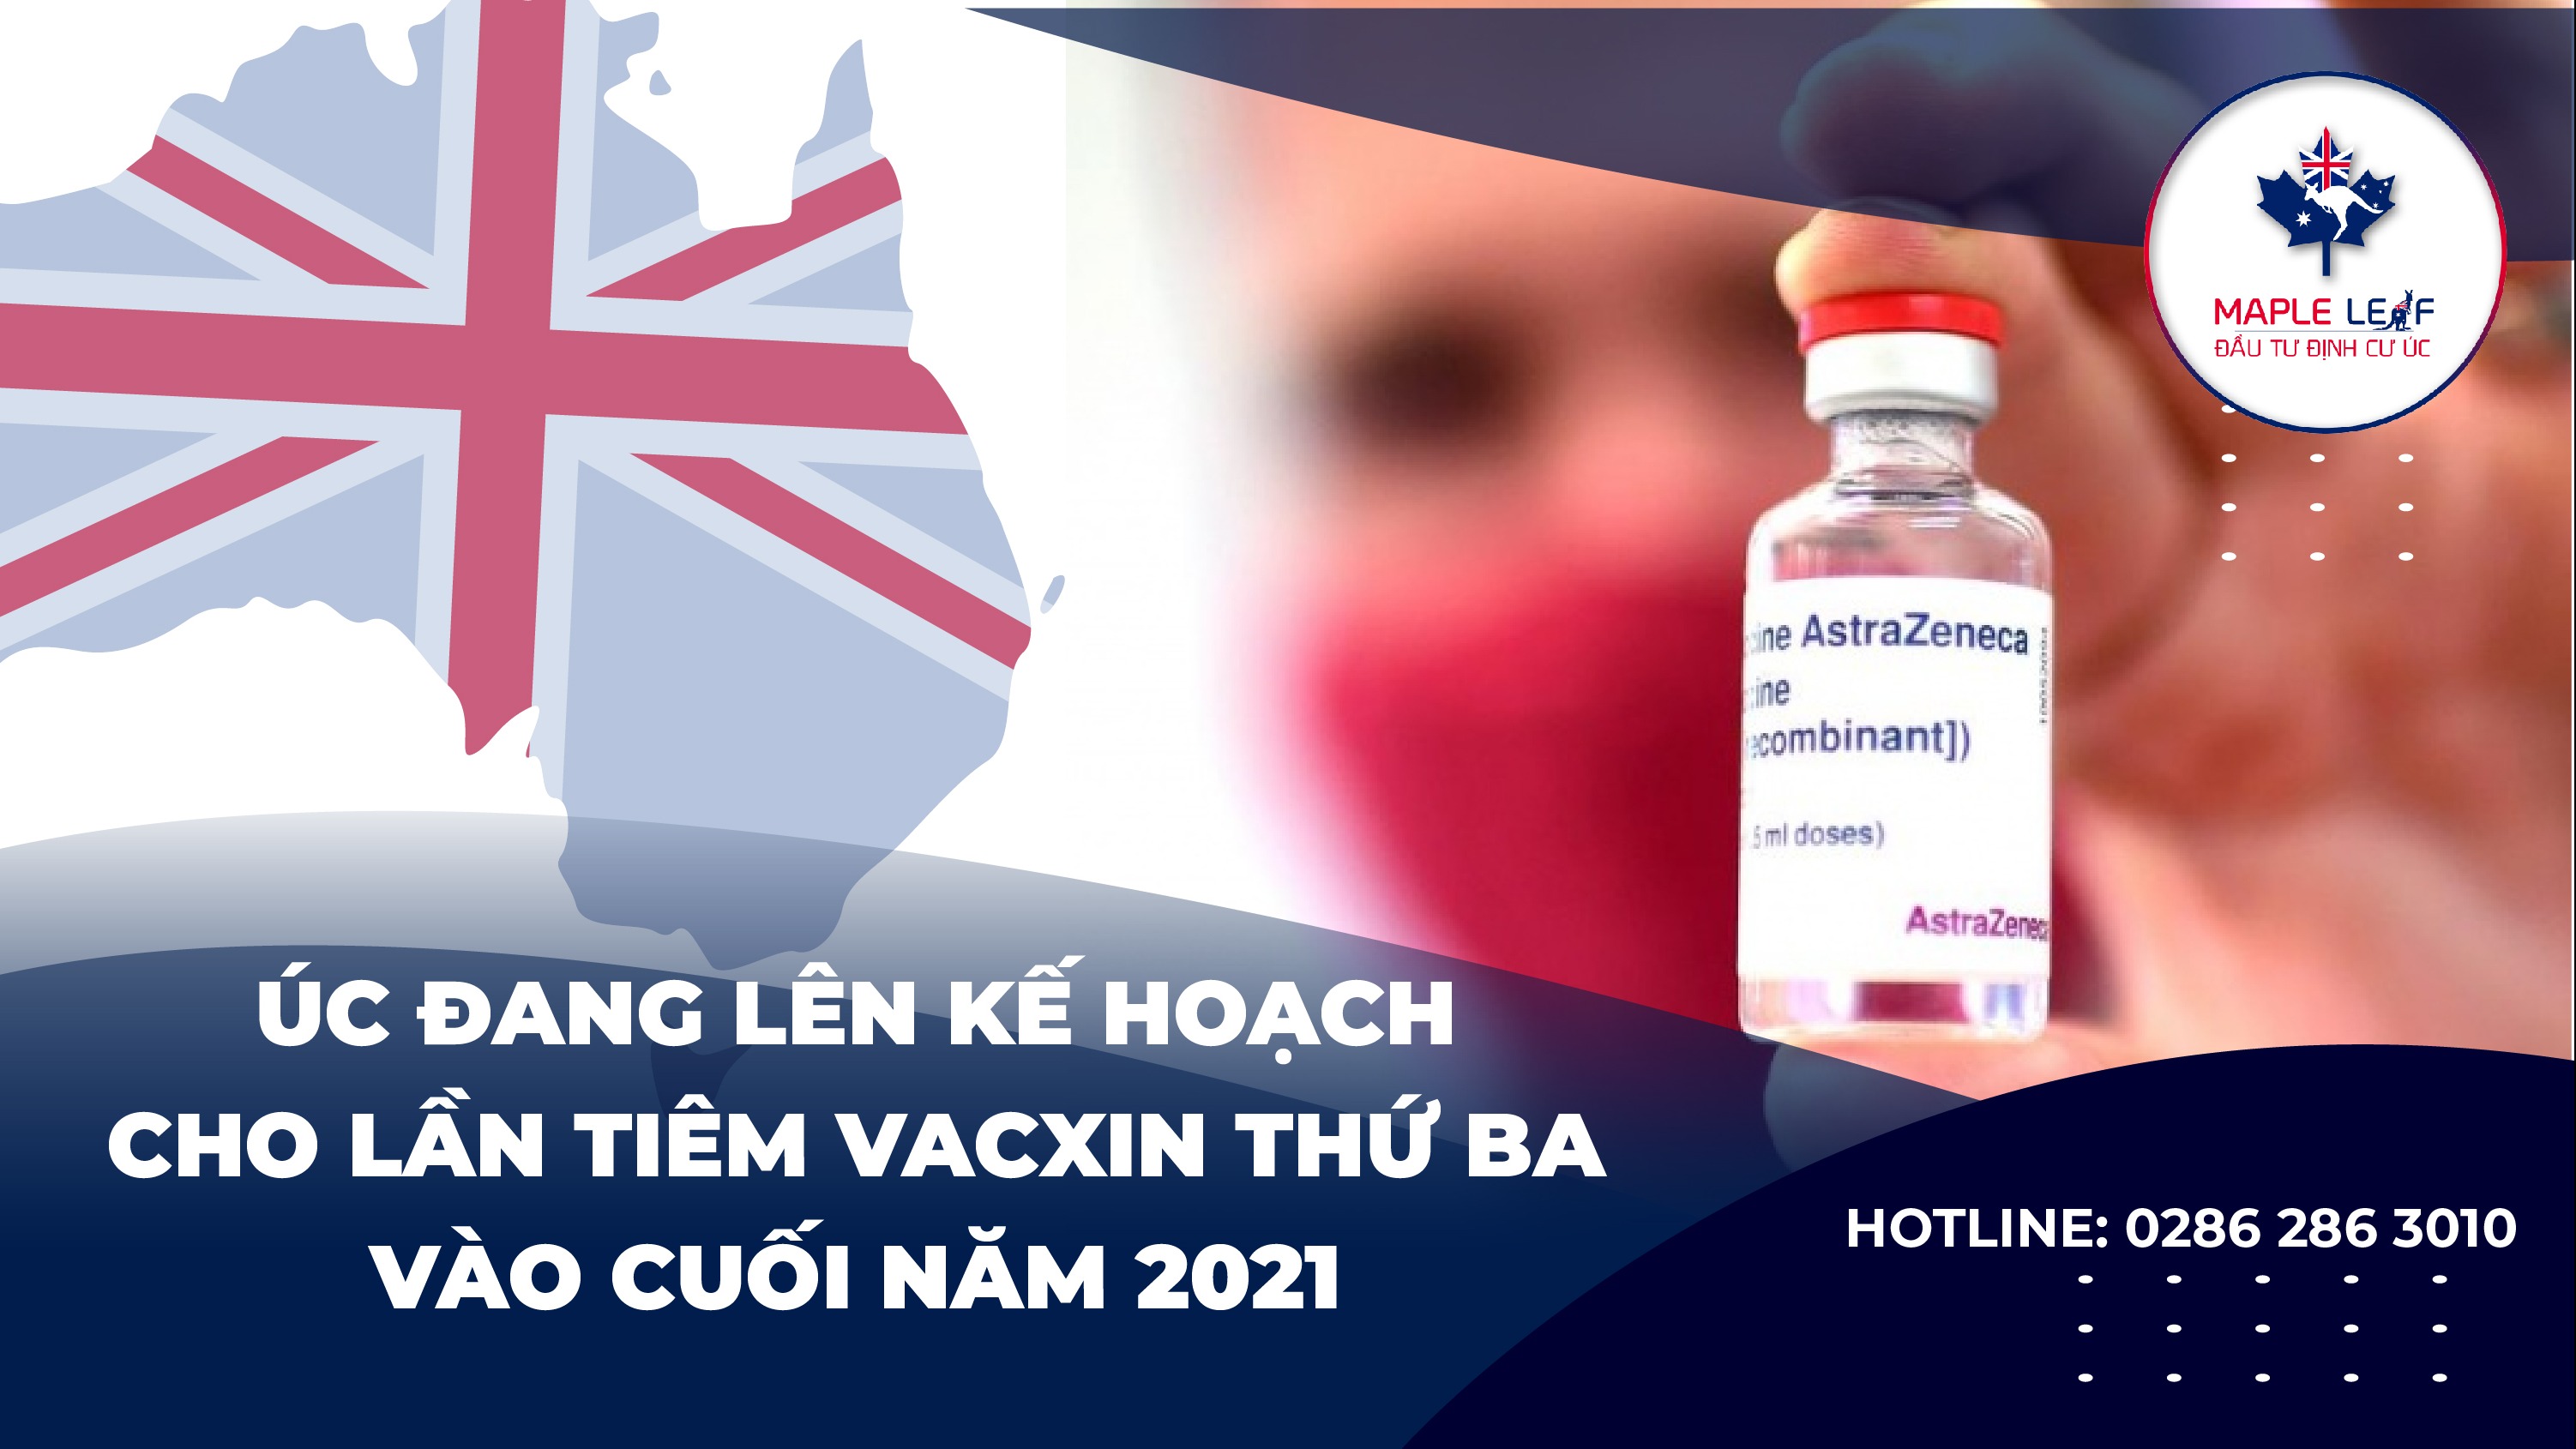 uc-dang-len-ke-hoach-cho-lan-tiem-vaccxin-thu-ba-vao-cuoi-nam-2021